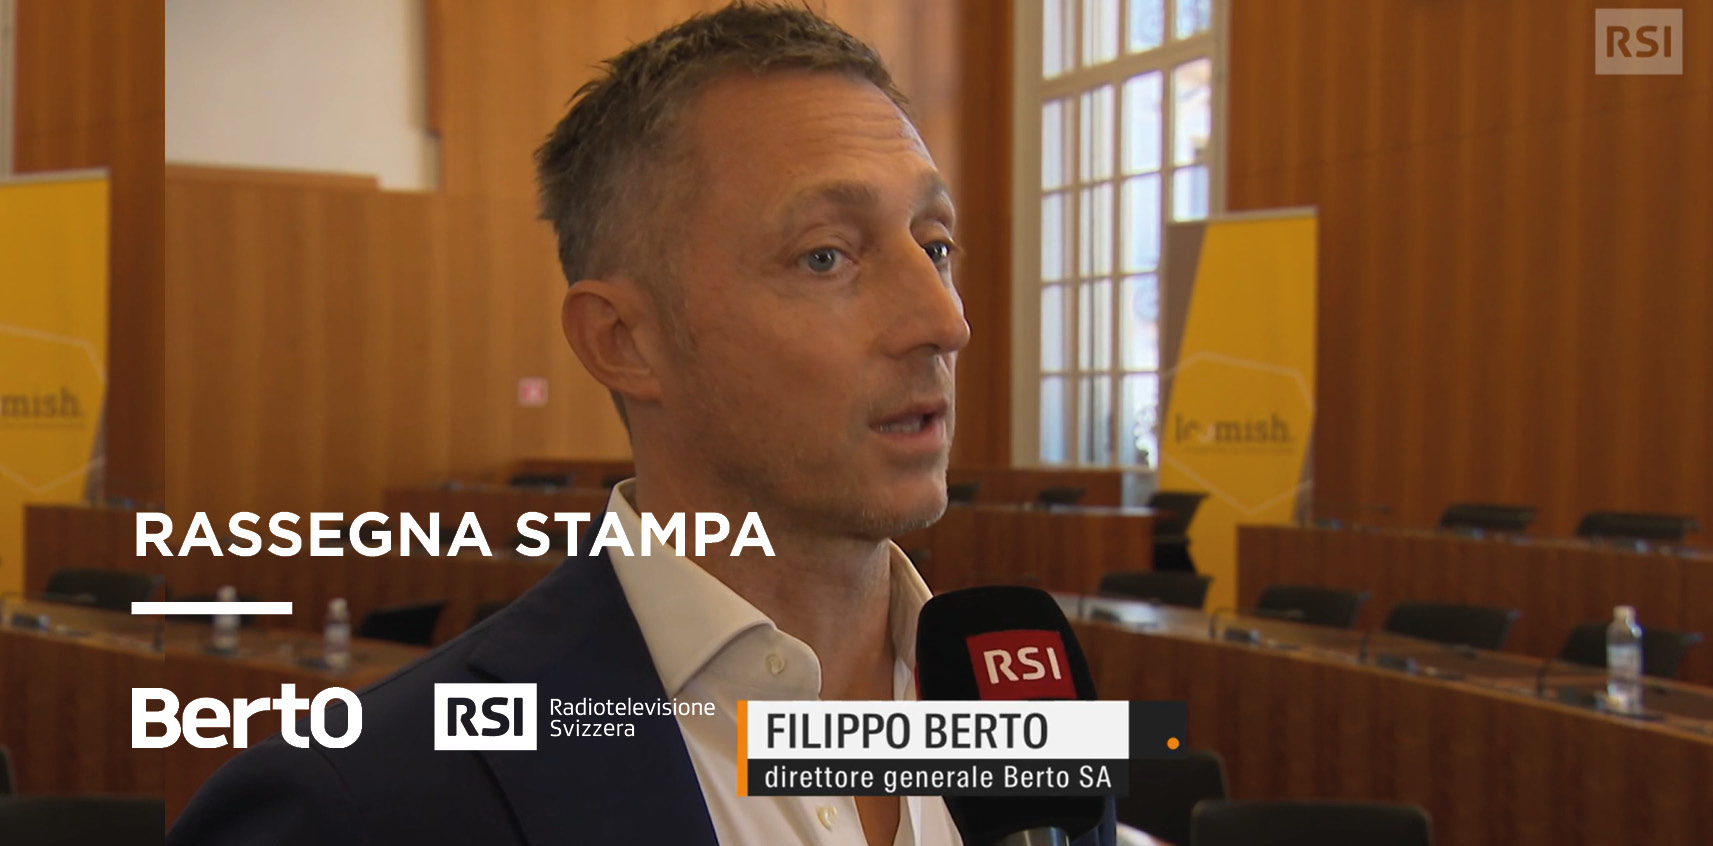 RSI intervista Filippo Berto per la partnership con Lifestyle Tech Competence Center